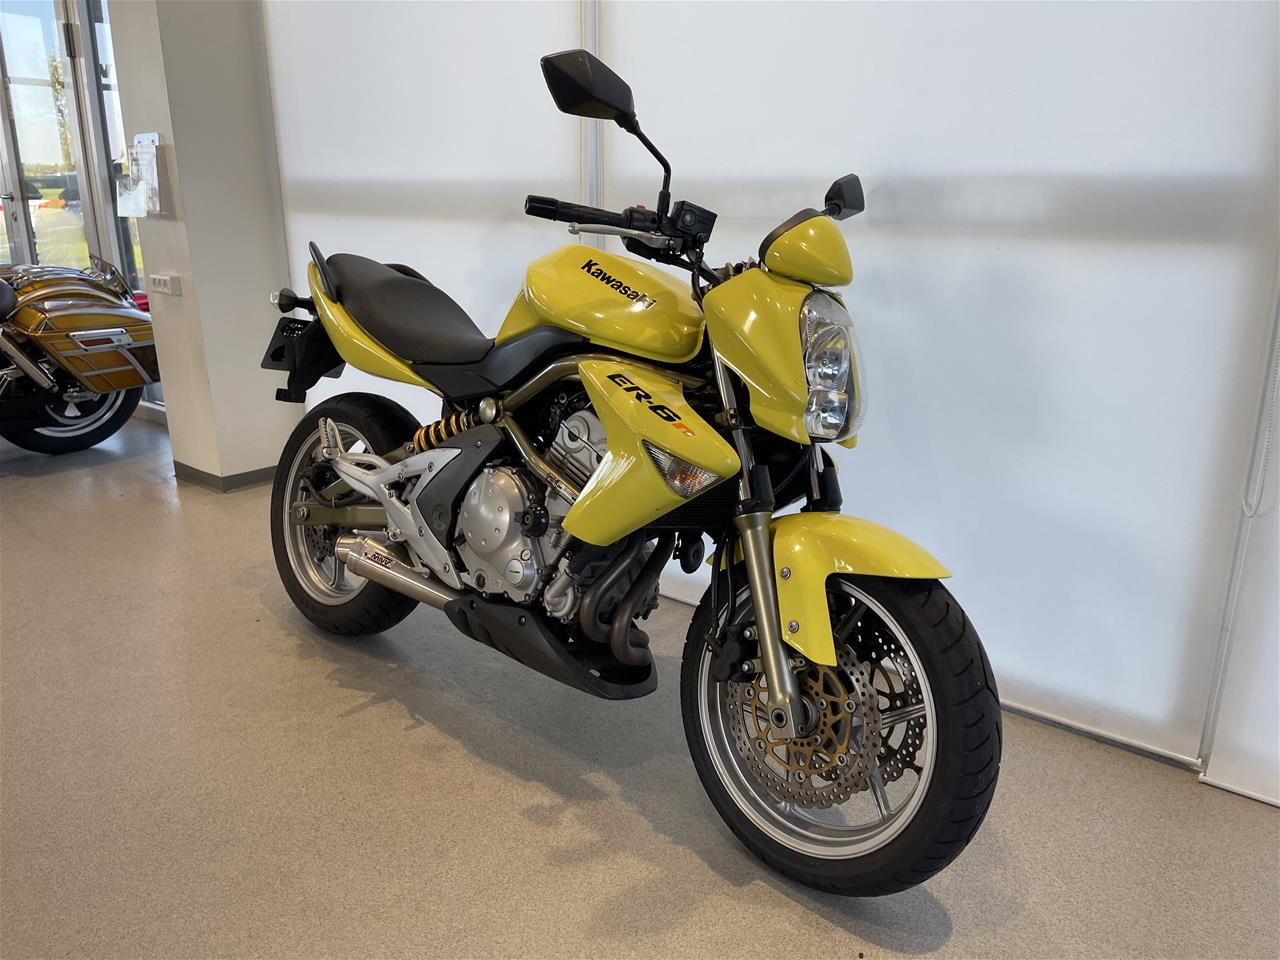 rigdom finansiere Trives Kawasaki ER-6N - Motorcykler - Se MC'er til Salg & Køb Brugt Motorcykel >  MN Auto